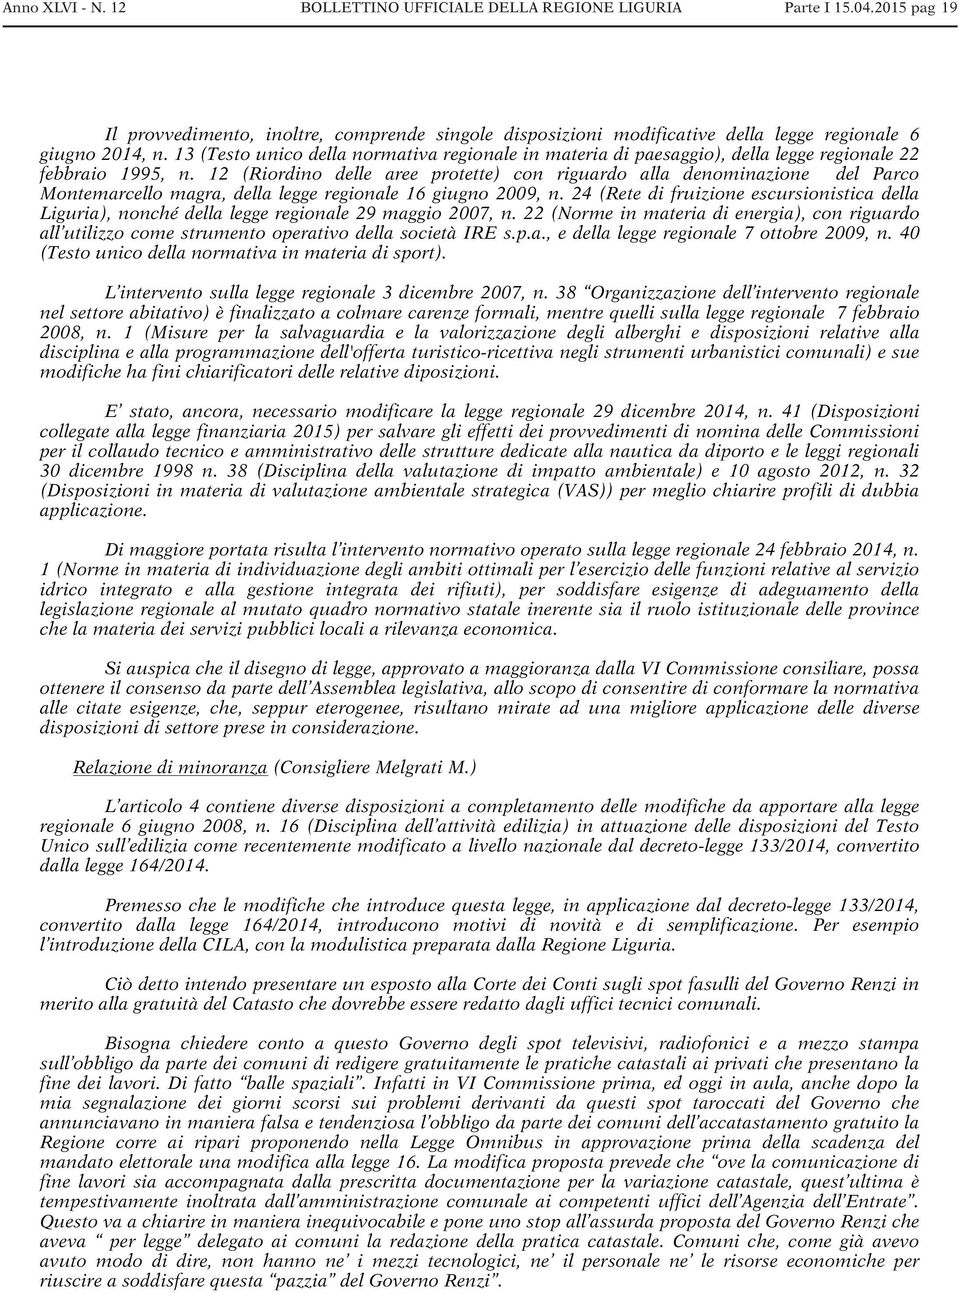 12 (Riordino delle aree protette) con riguardo alla denominazione del Parco Montemarcello magra, della legge regionale 16 giugno 2009, n.